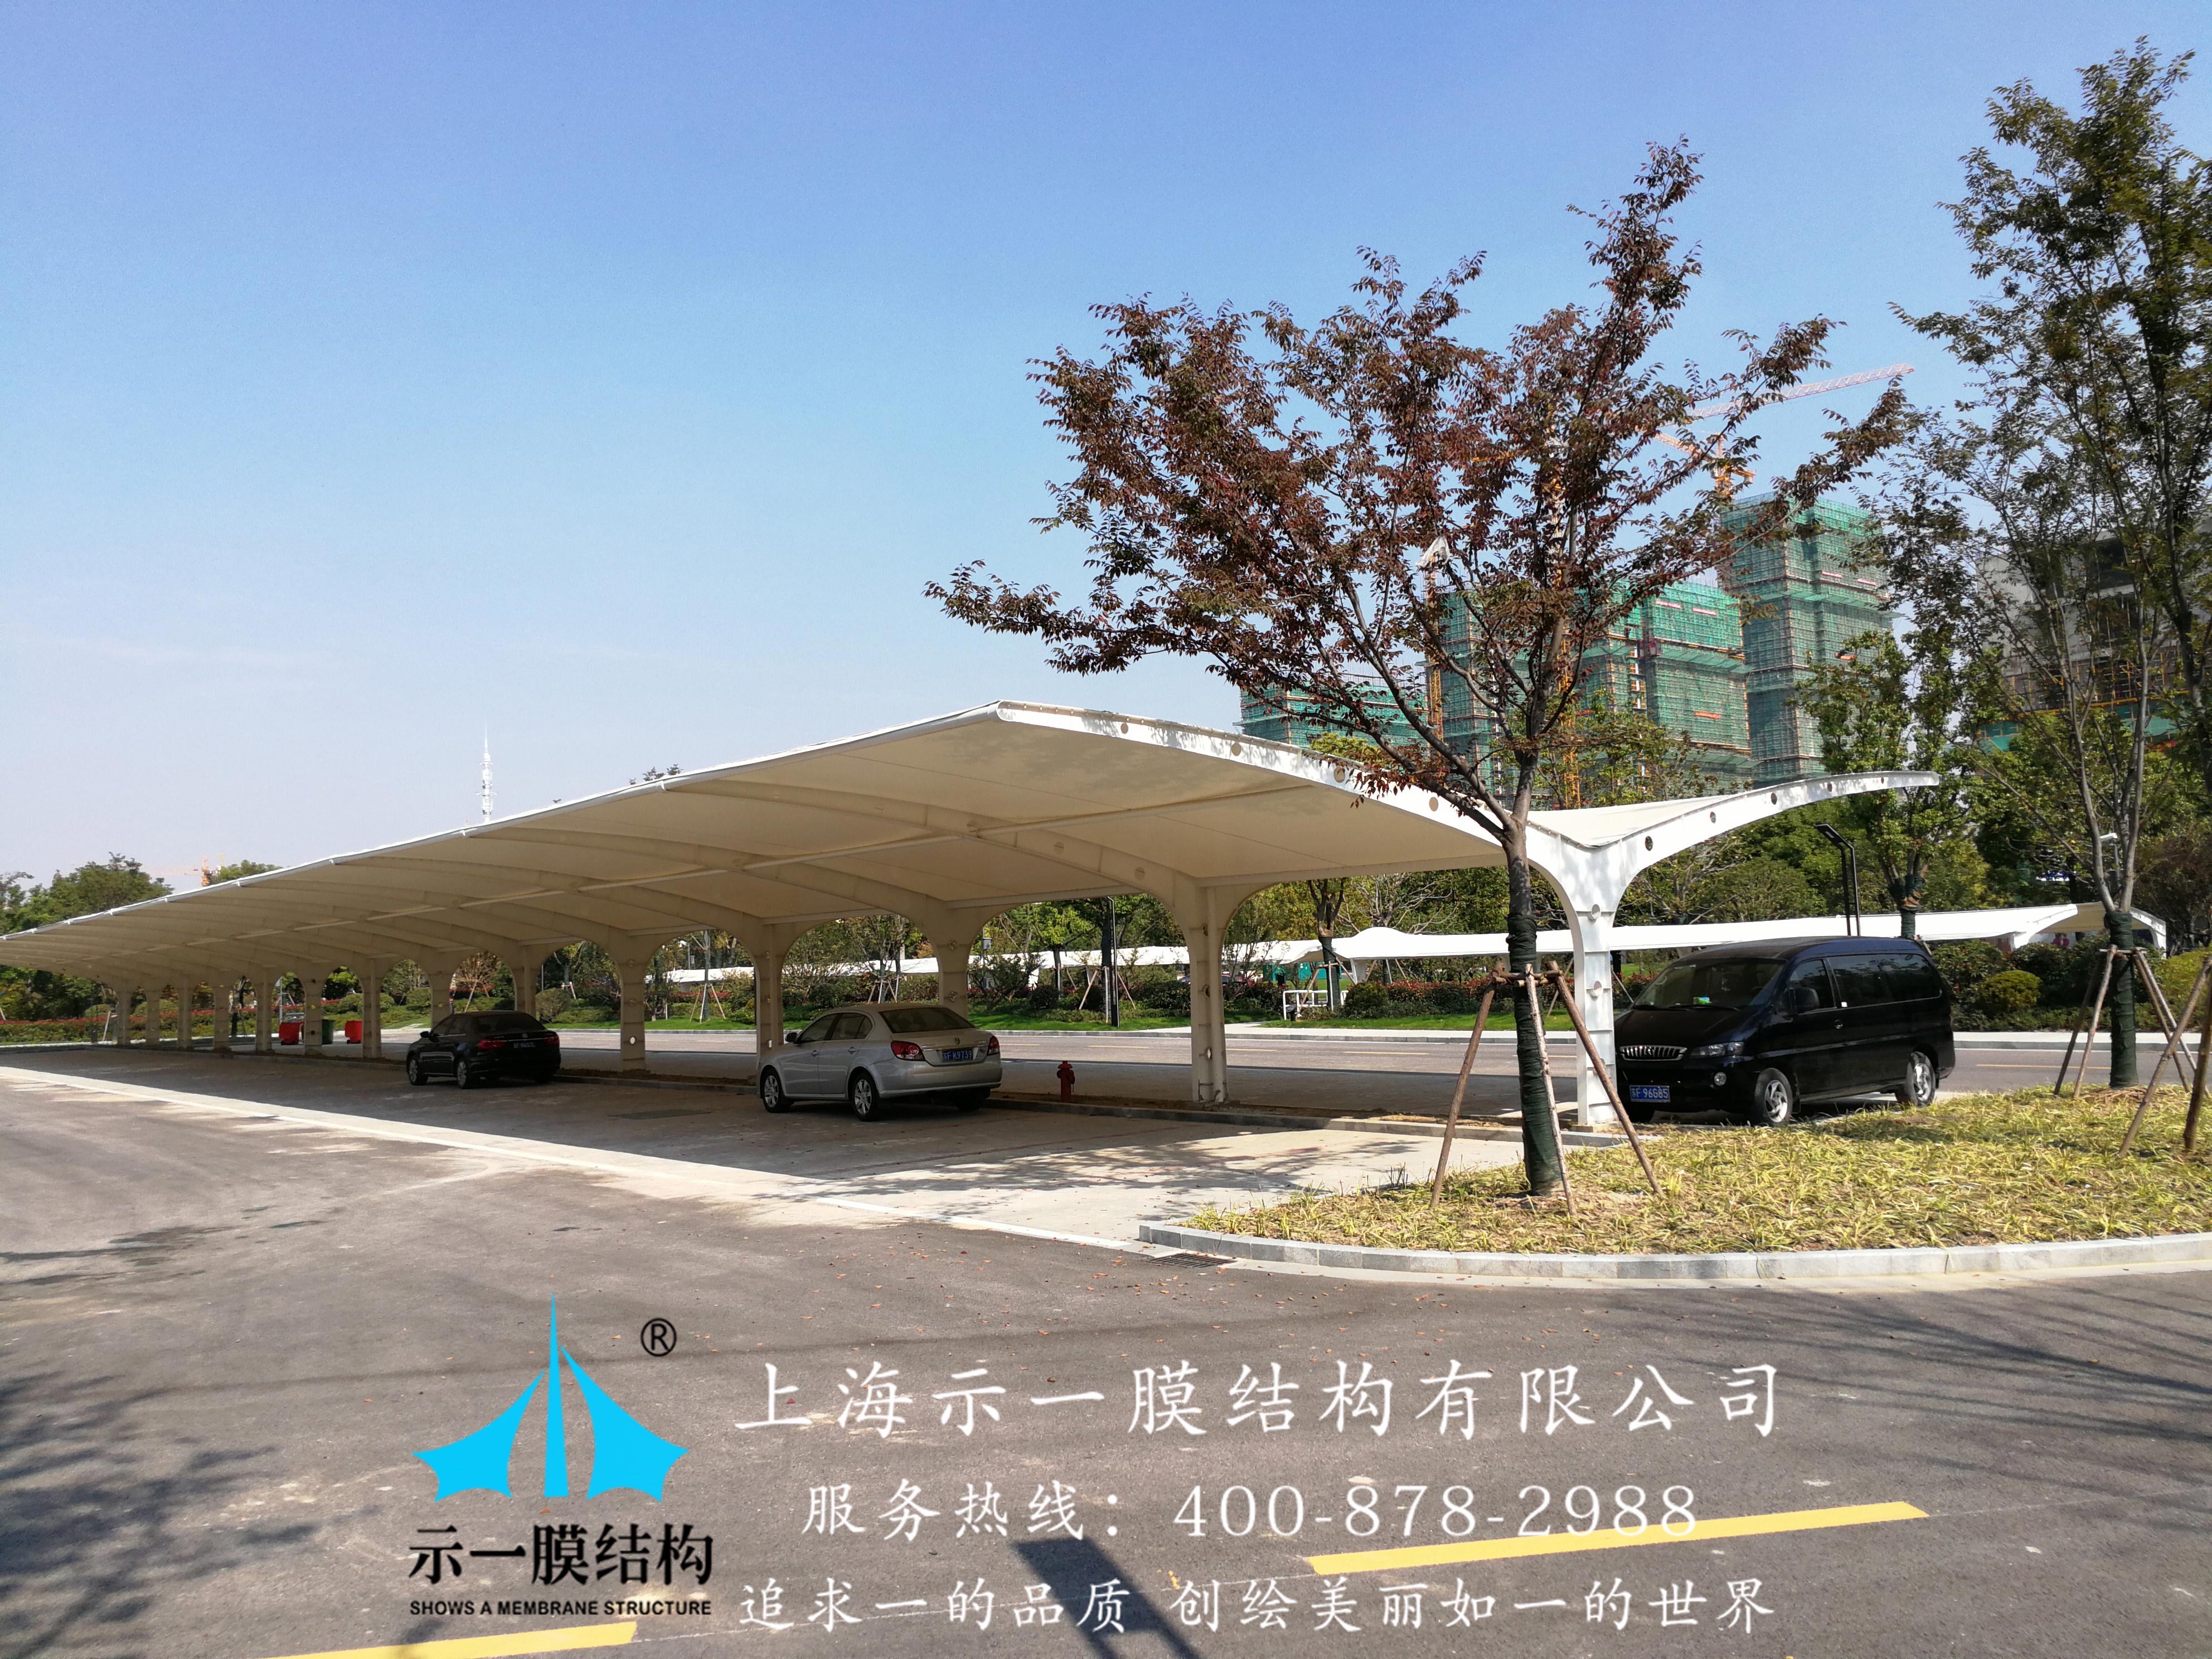 上海示一膜结构南通市政府膜结构停车棚